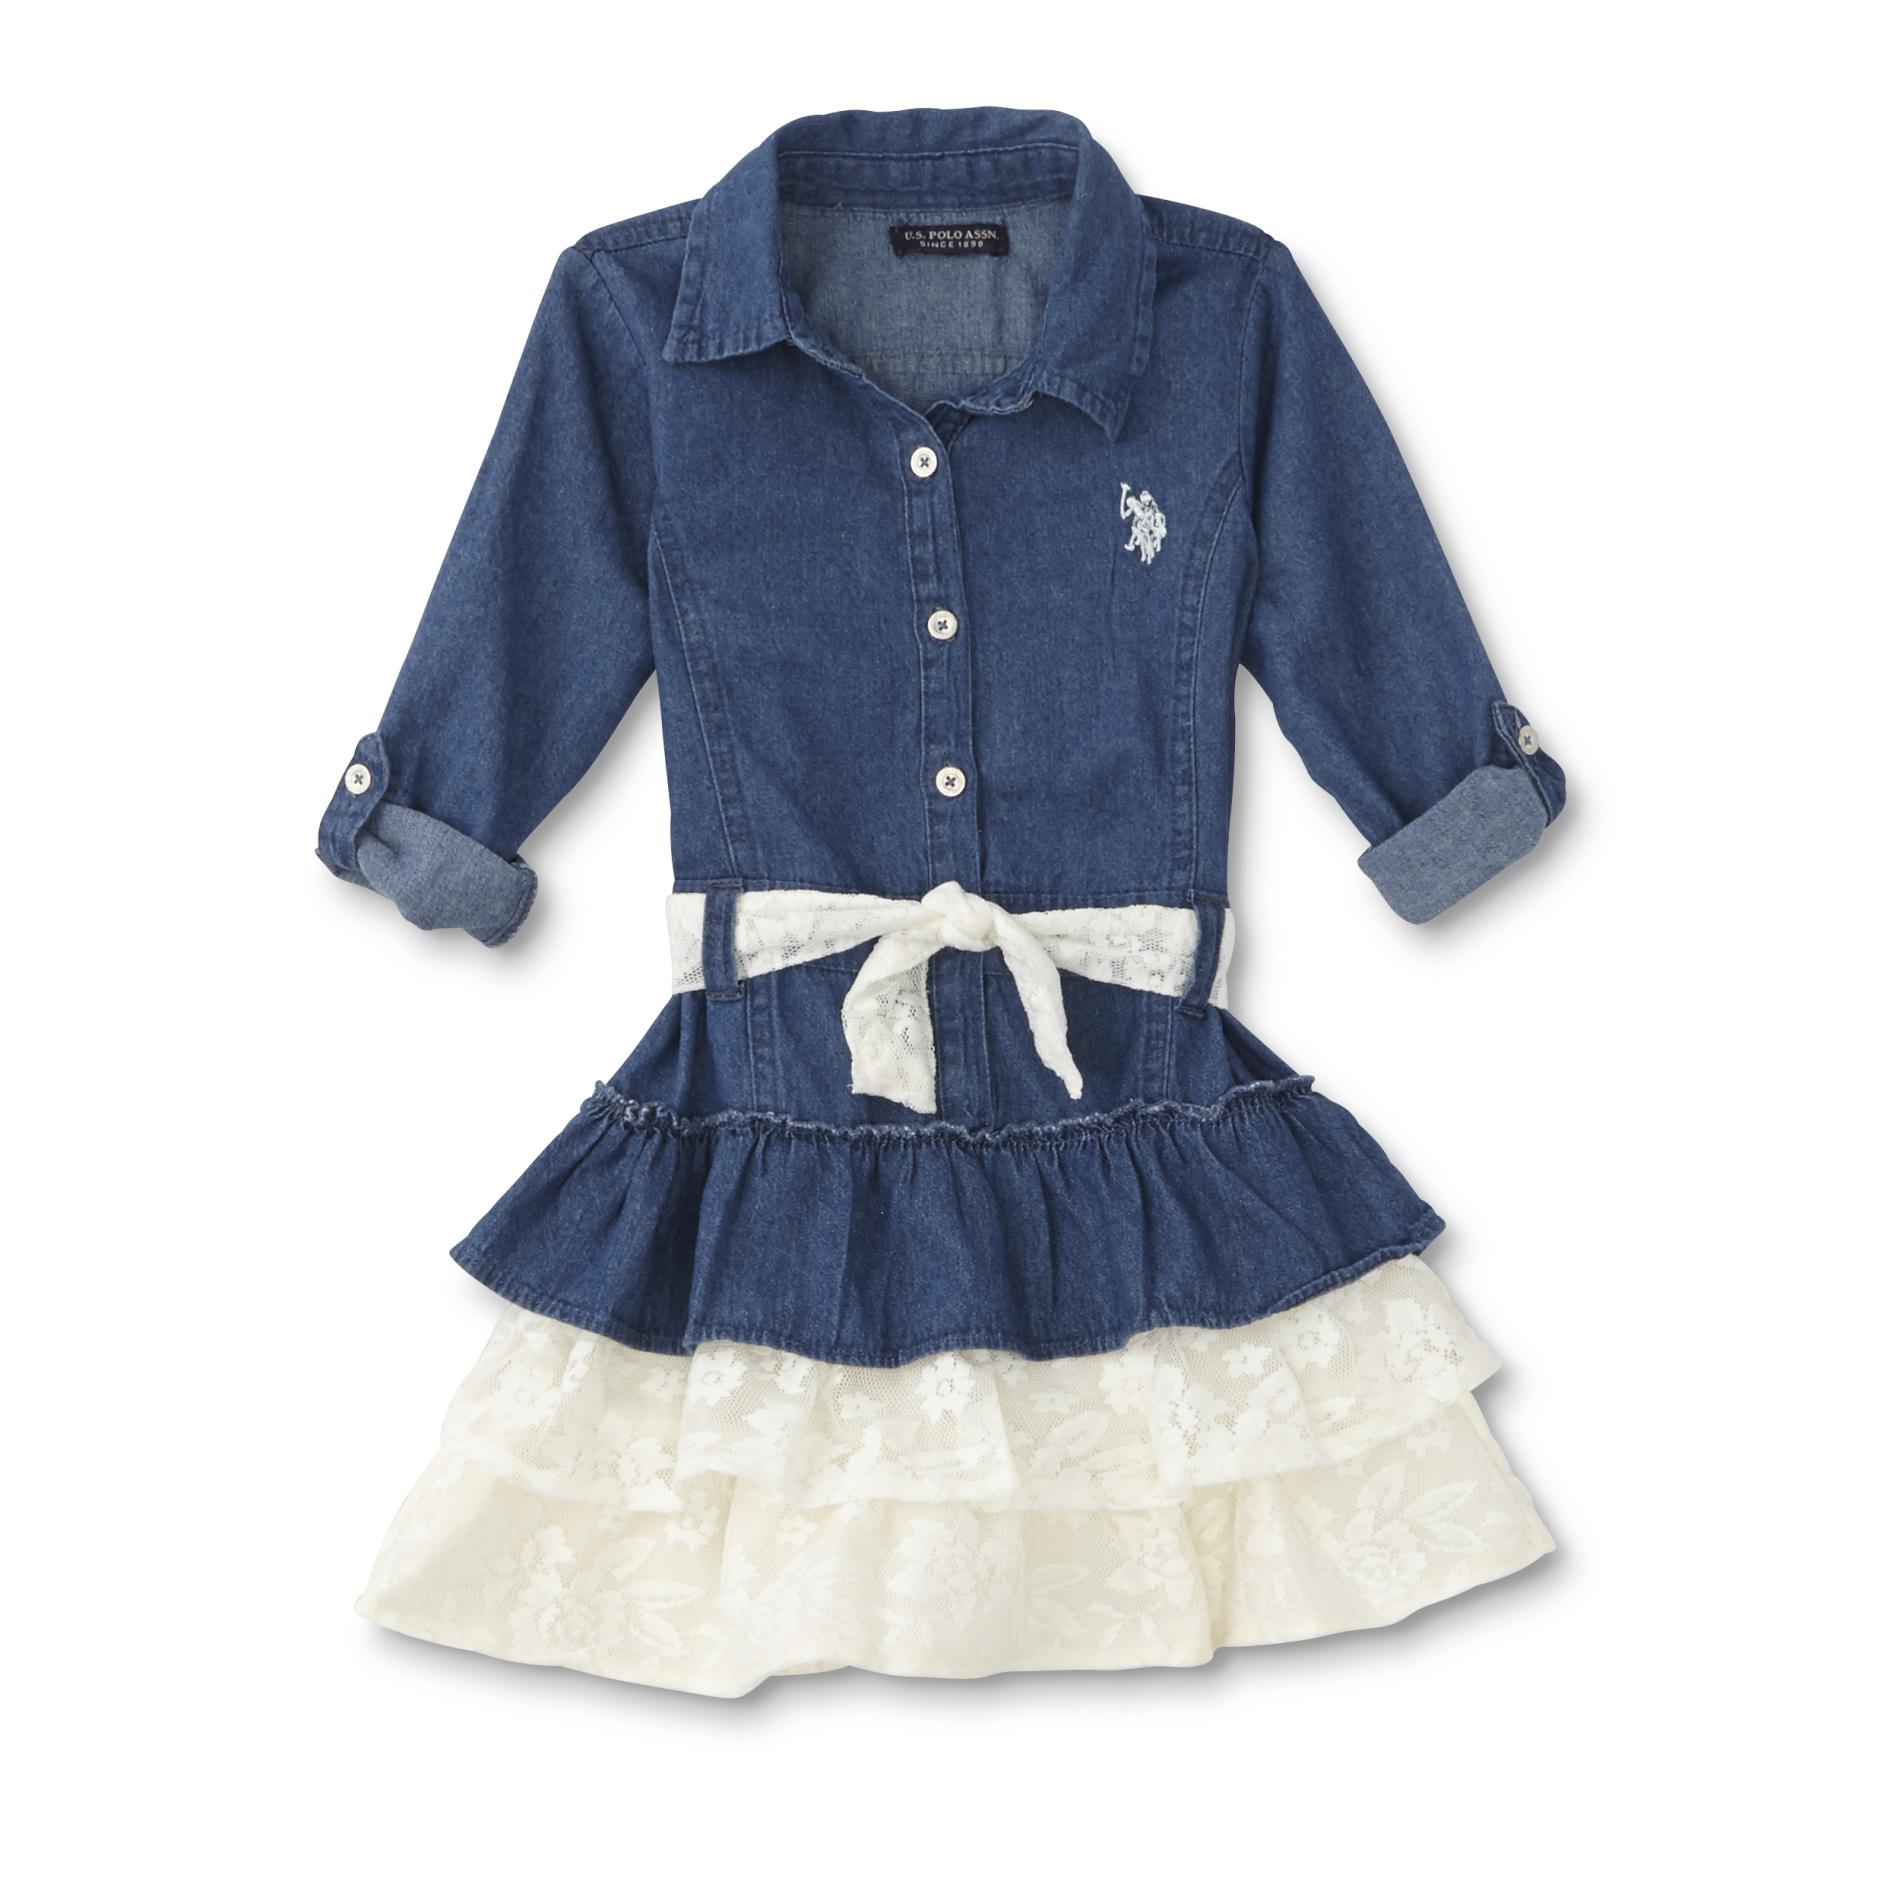 U.S. Polo Assn. Infant & Toddler Girls' Denim Ruffle Dress